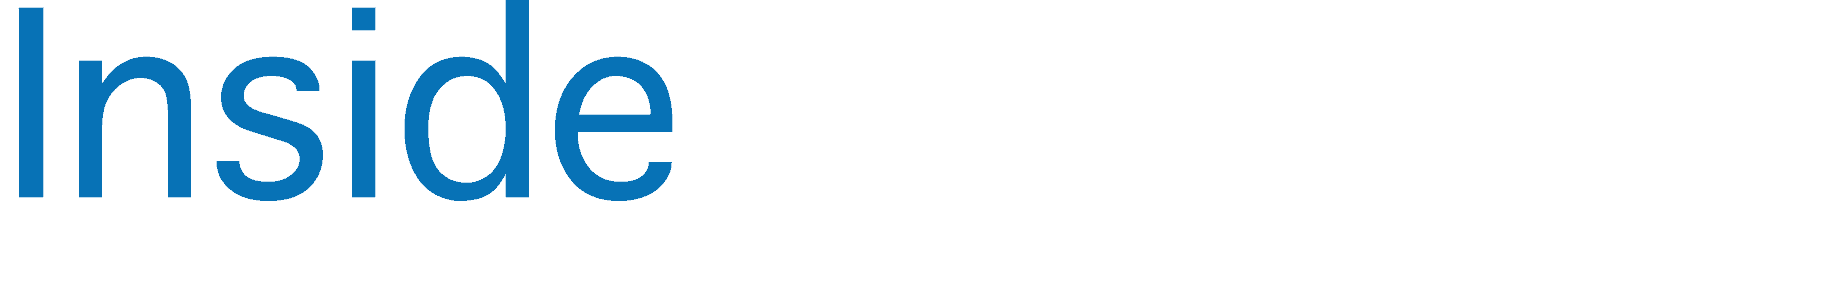 alt="Inside insurance logo, blue color for 'Inside' and white color for 'Insurance'."